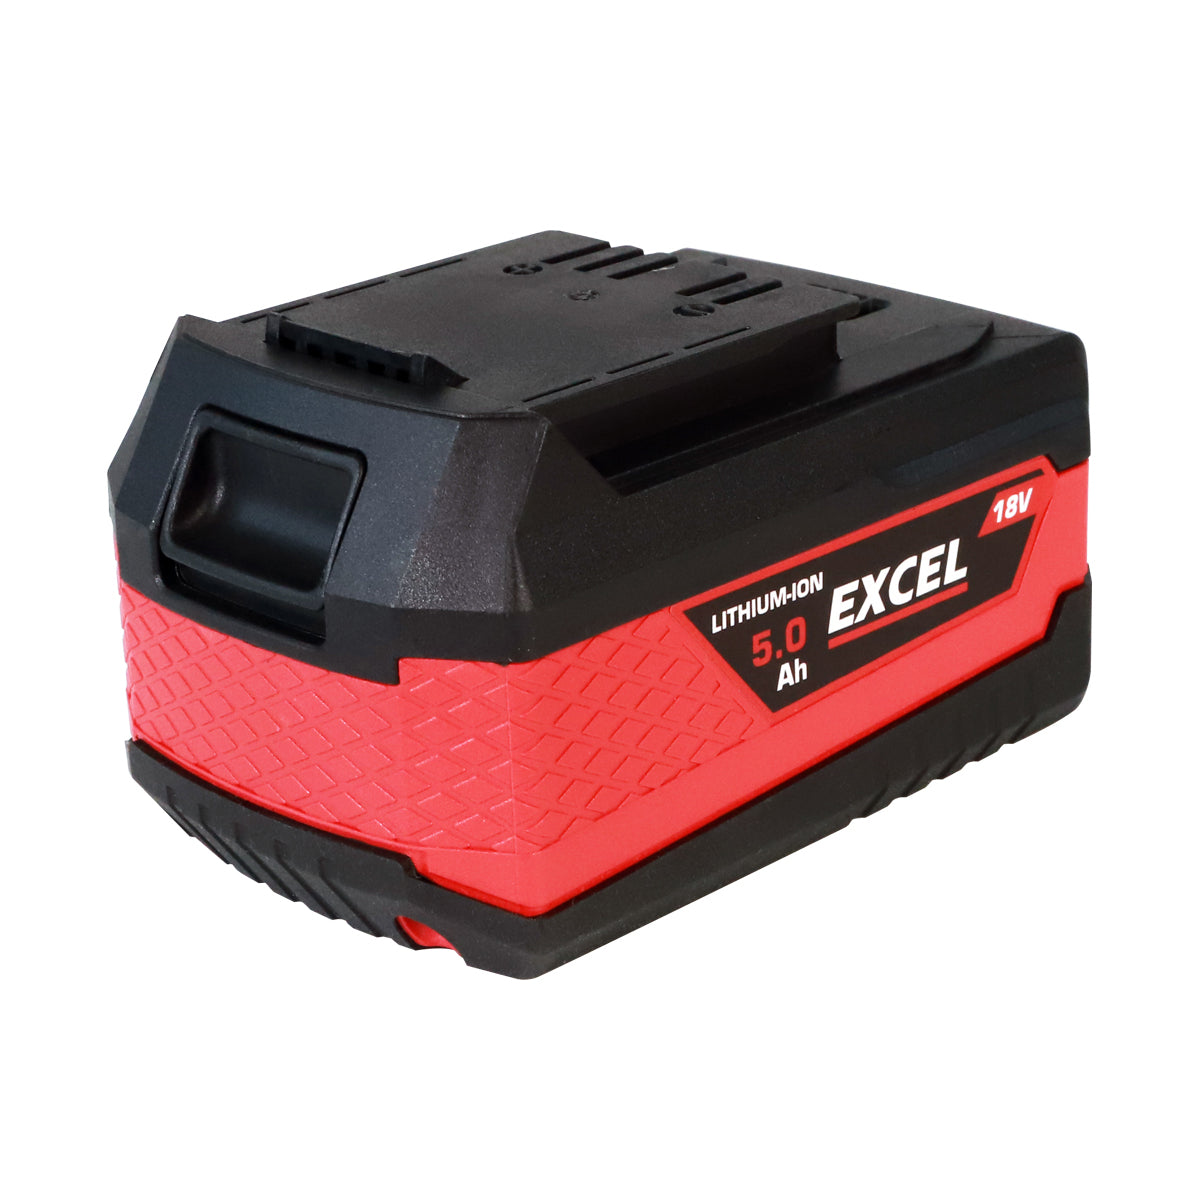 Excel 18V Grass Trimmer & Hedge Trimmer 2 x 5.0Ah Batteries & Charger EXL14991